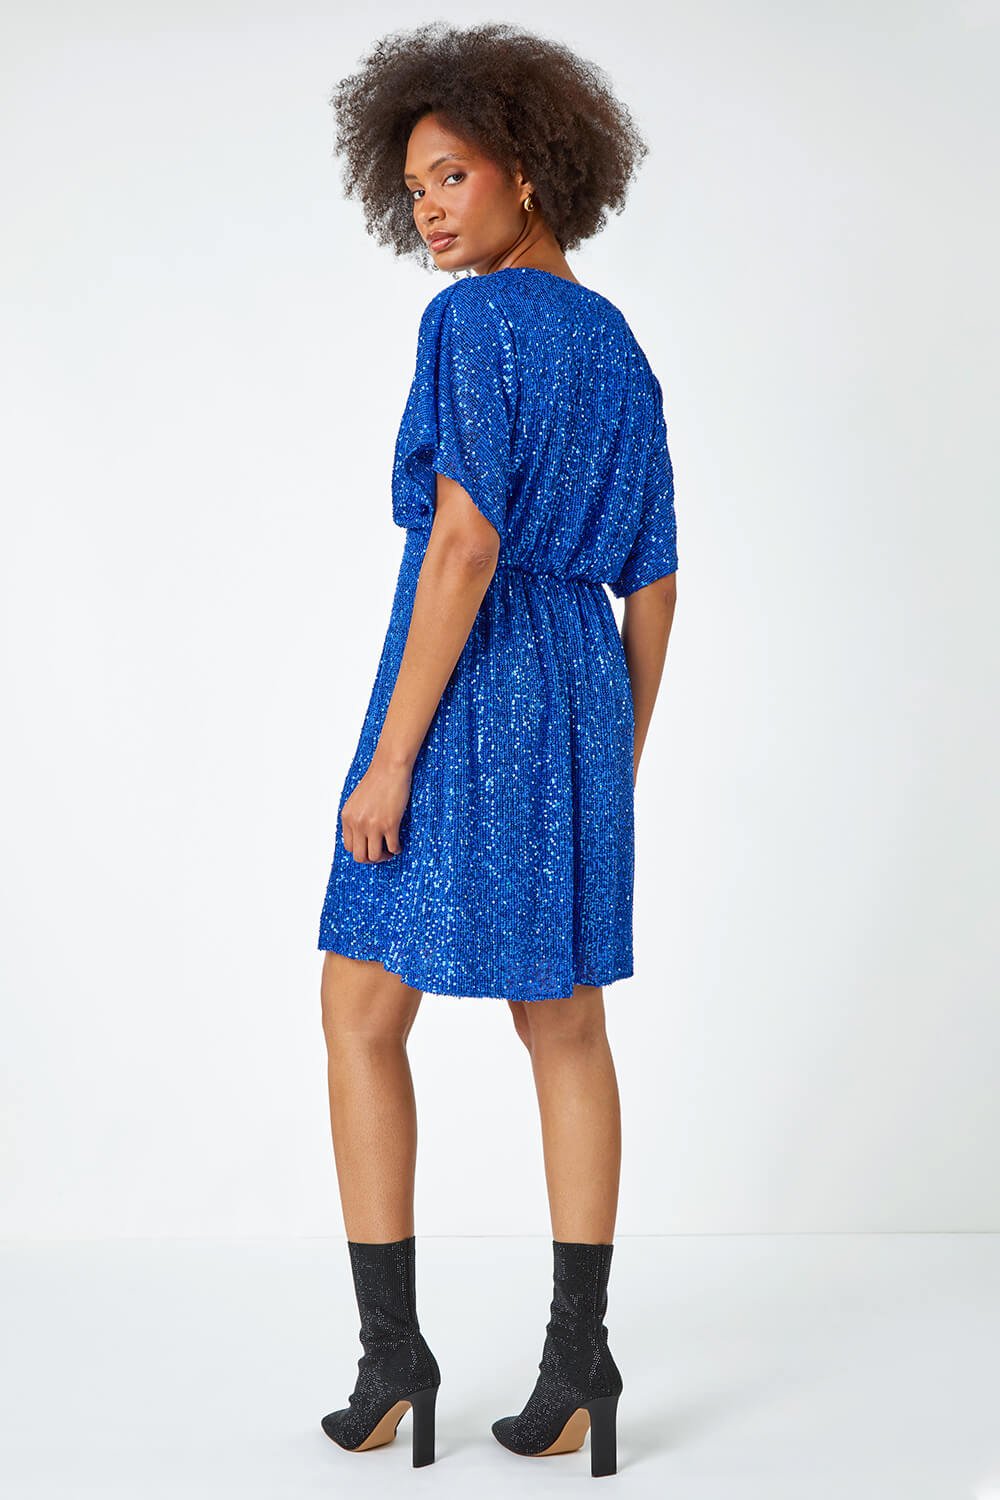 Royal Blue Sequin Embellished Wrap Stretch Dress, Image 3 of 6